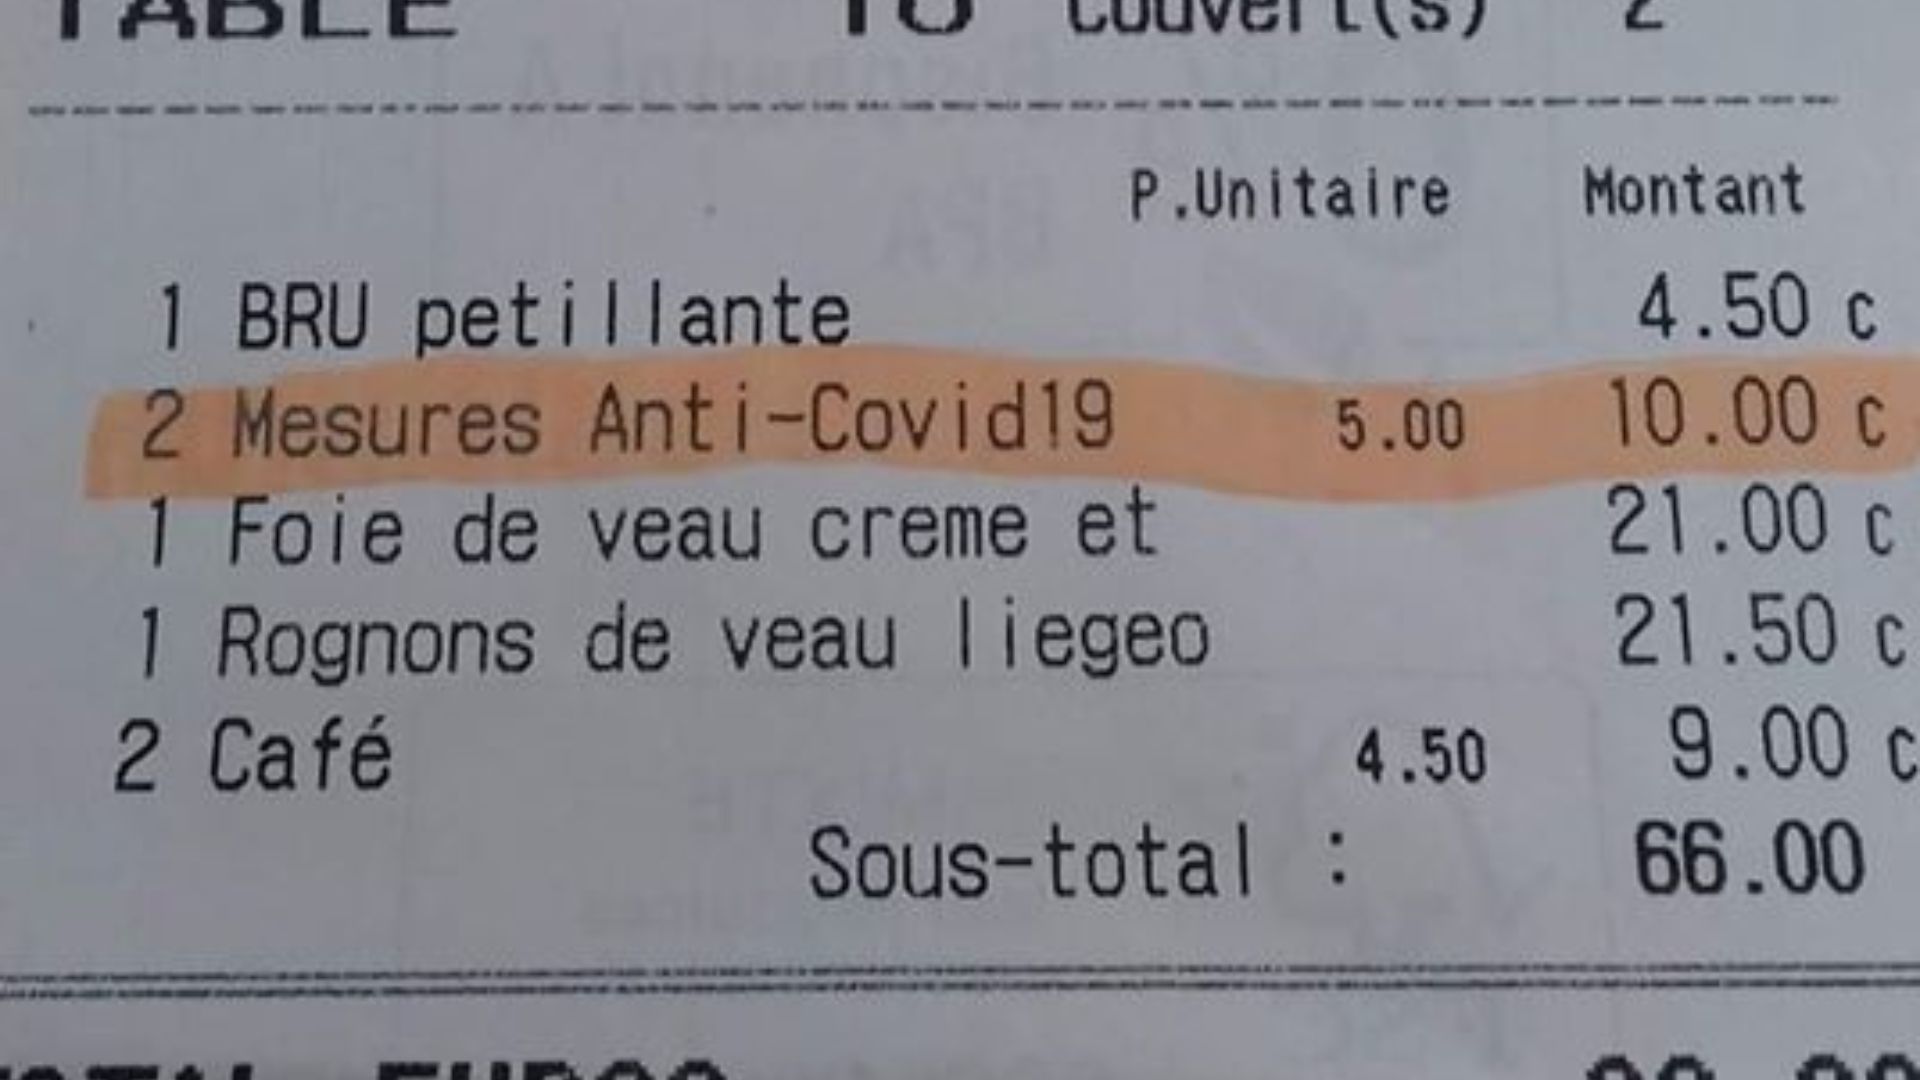 Un supplément "mesures Anti-Covid19 dans un restaurant bruxellois : "Cela a duré 10 jours et les clients comprenaient"